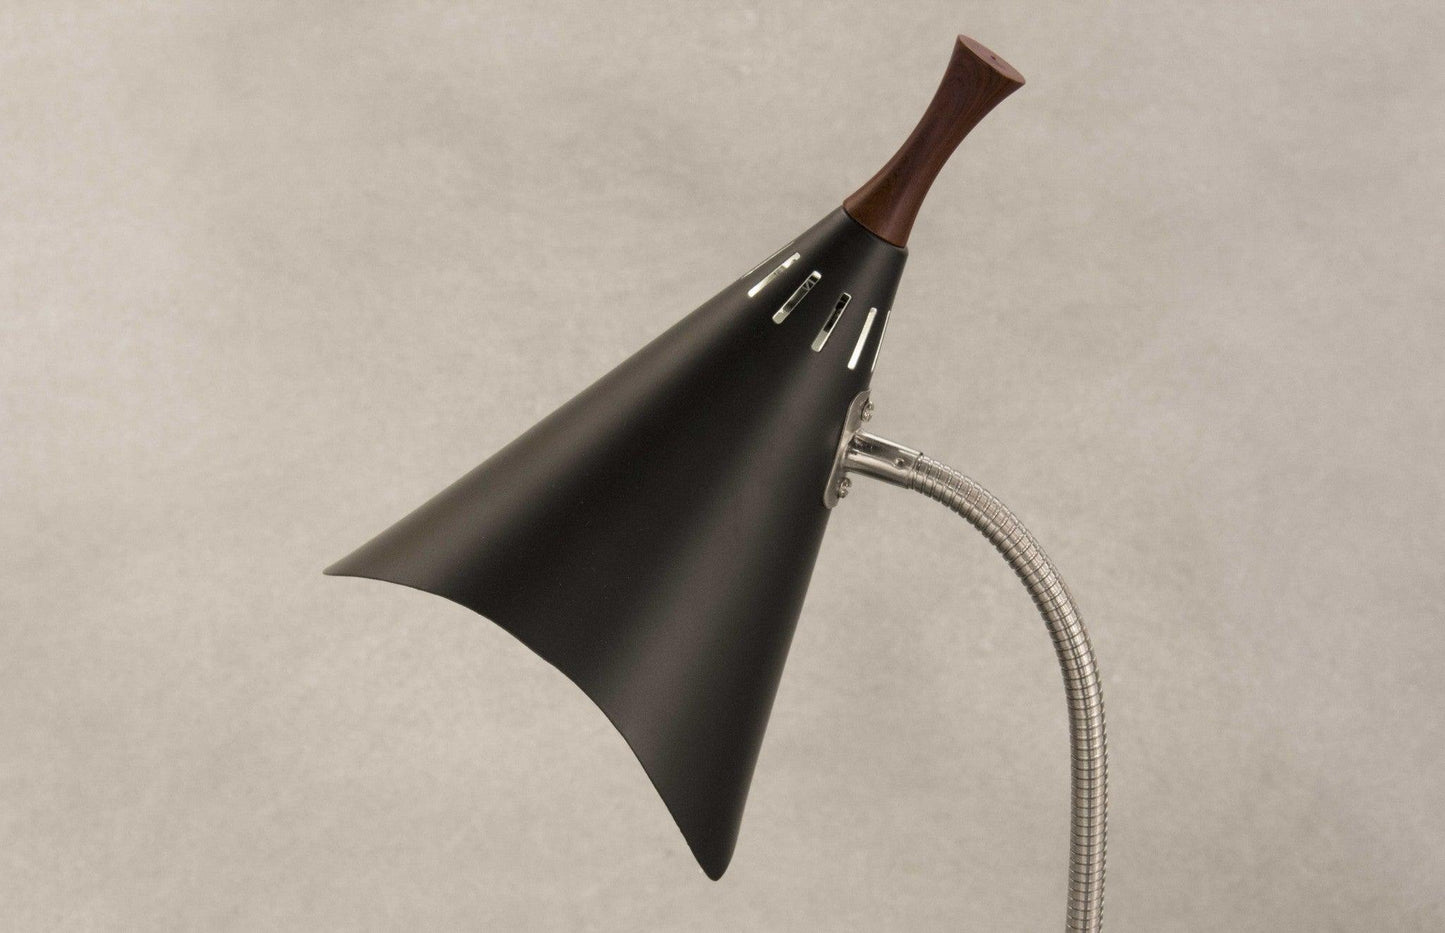 Matte Black Metal Gooseneck Adjustable Desk Lamp - AFS